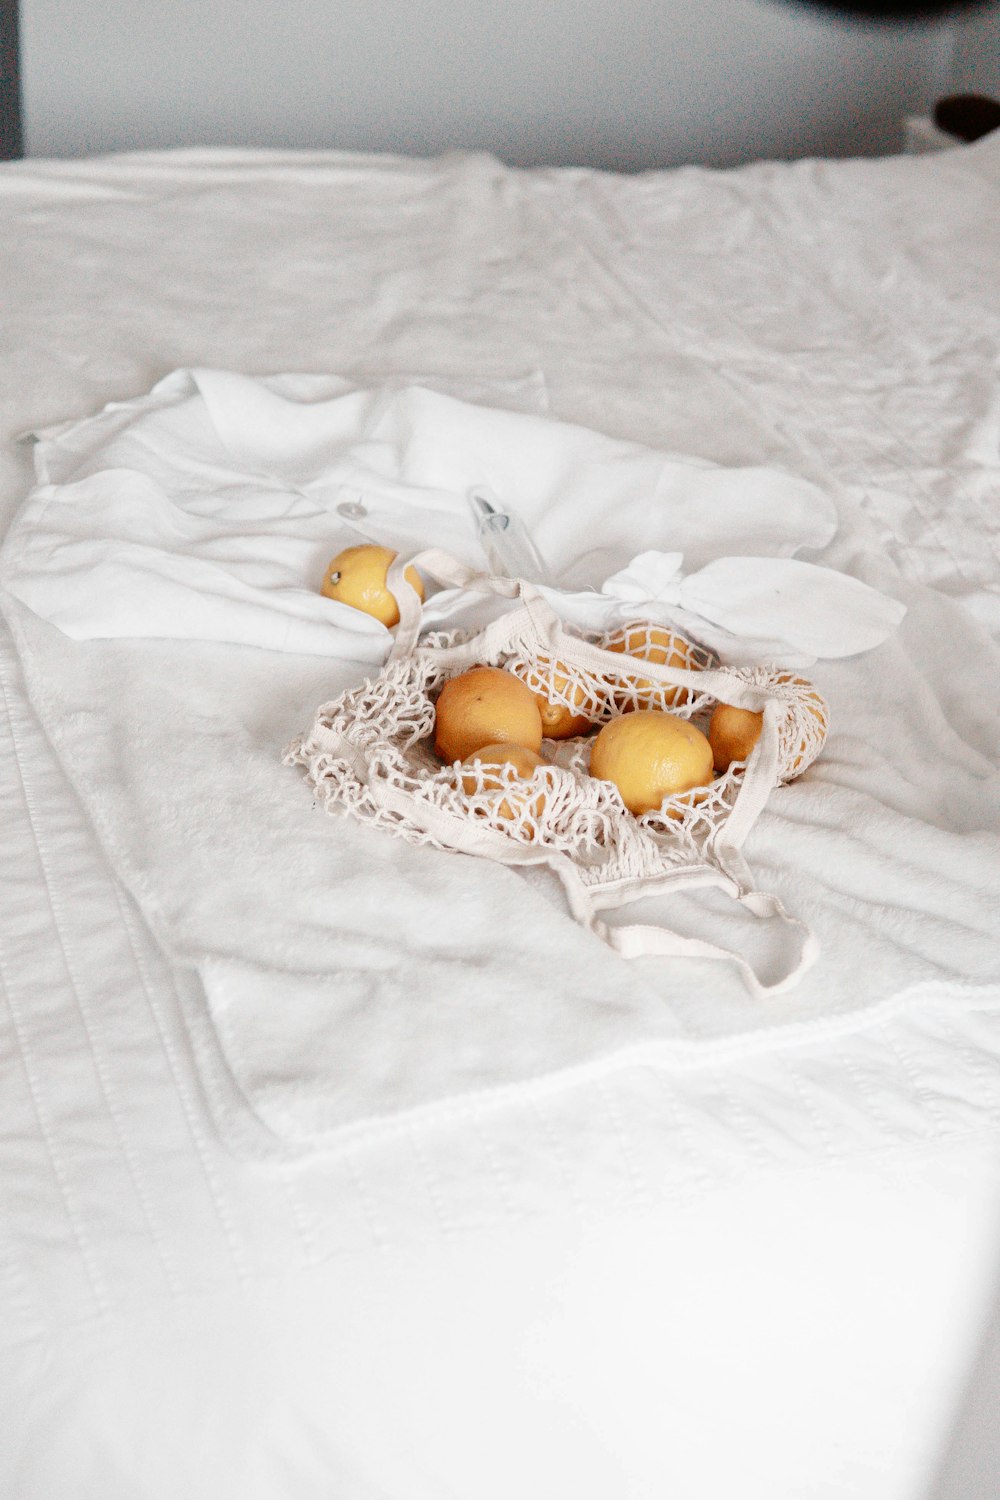 brown egg on white textile